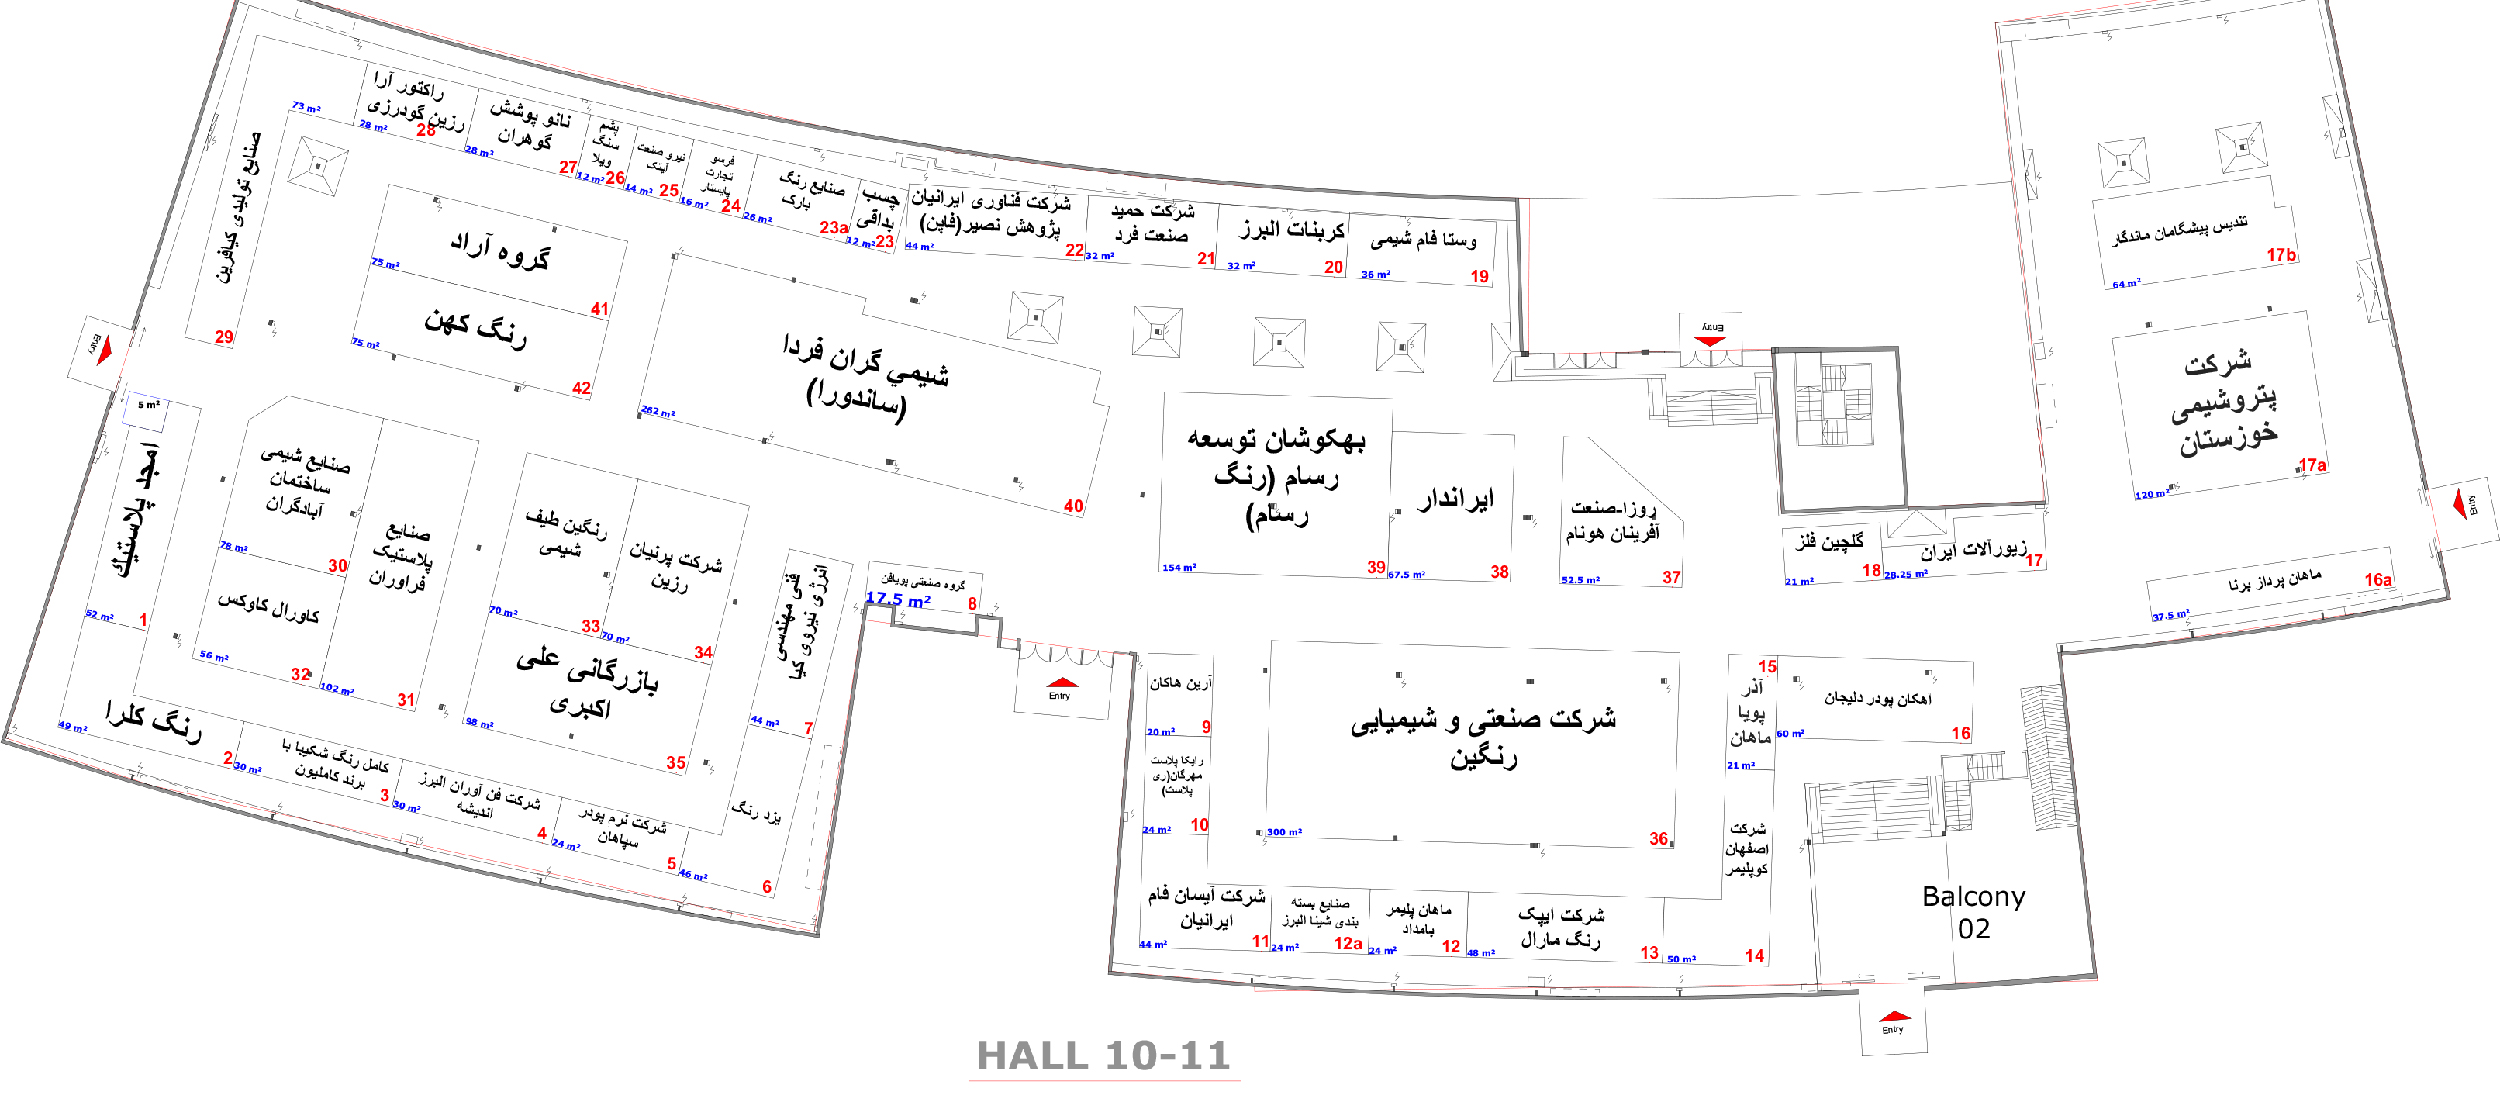 نقشه سالن 10 و 11 نمایشگاه رنگ و رزین 1401